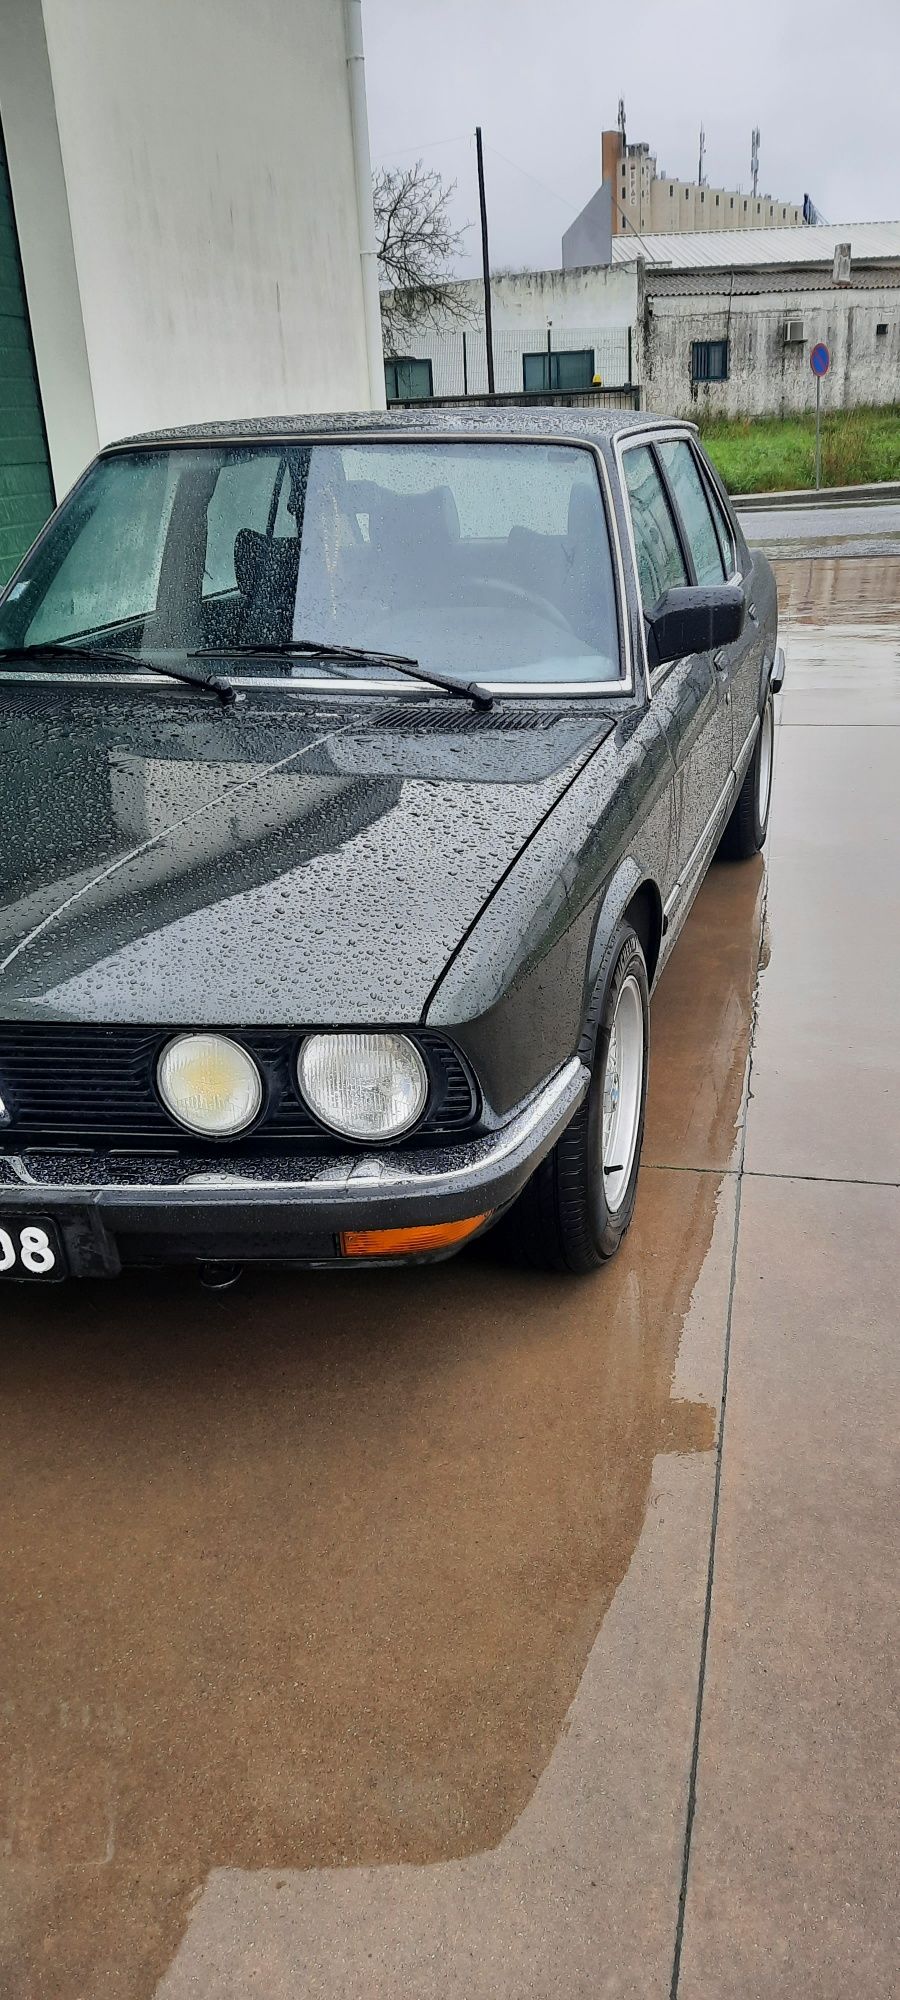 BMW 520i e28 de 1983